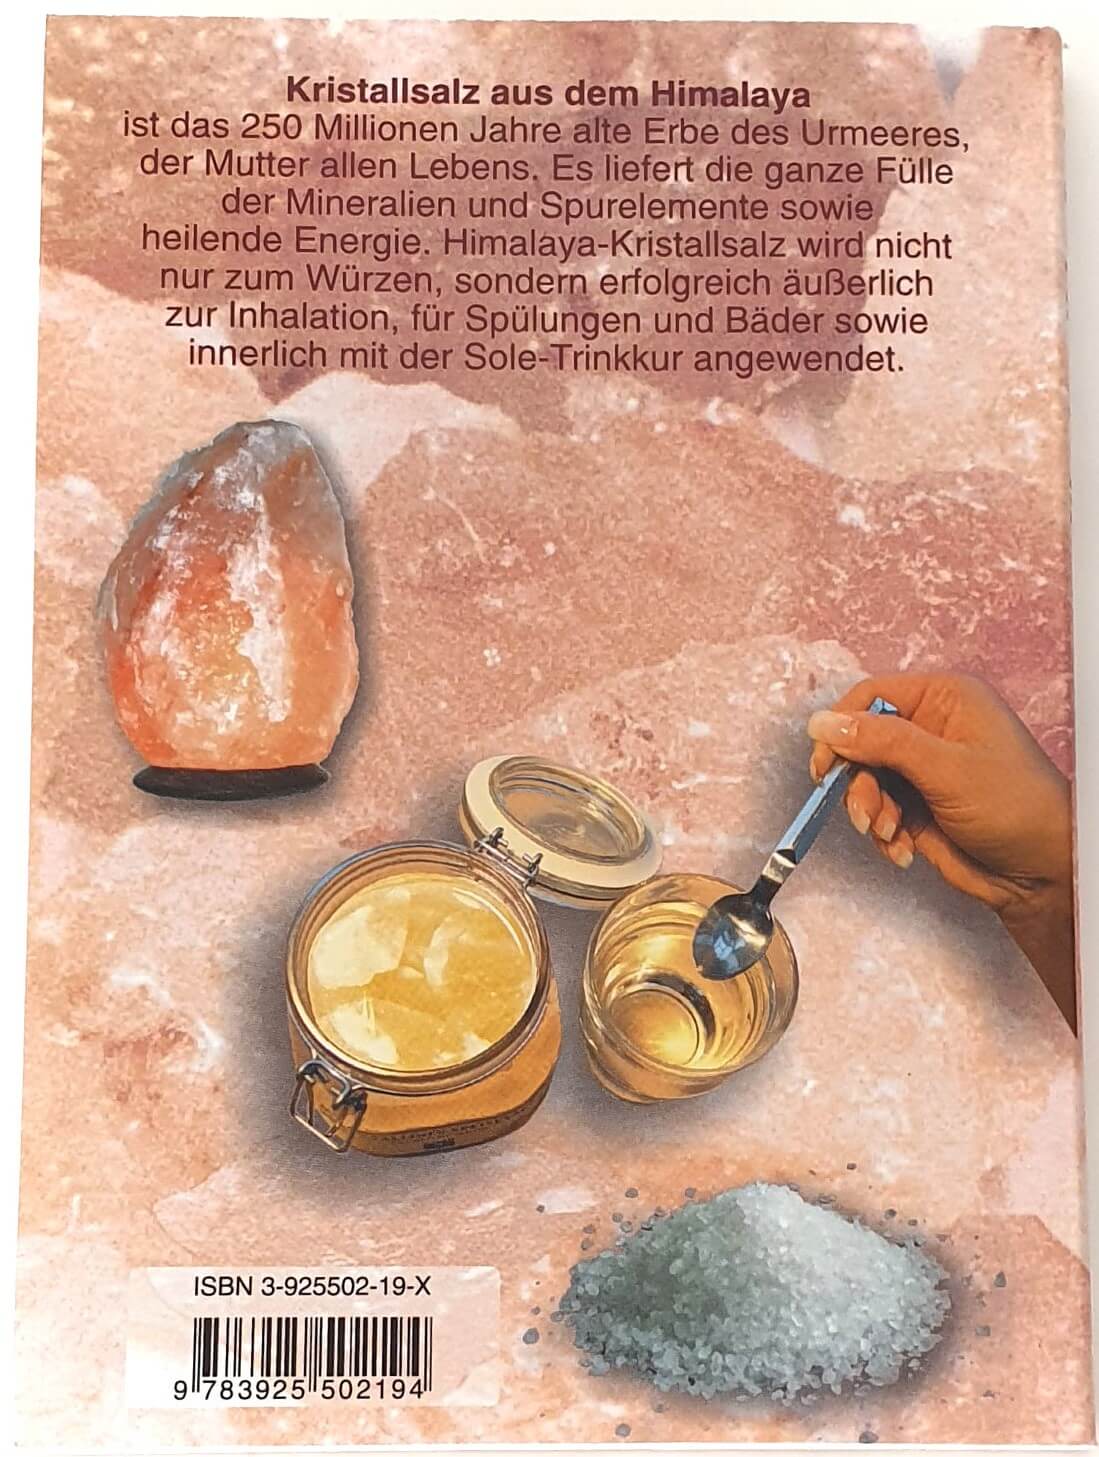 Himalaya-Kristallsalz - Essenz des Urmeeres - Inhaltsstoffe, Wirkprinzipien und Heilanwendungen von Dr. Jürgen Weihofen